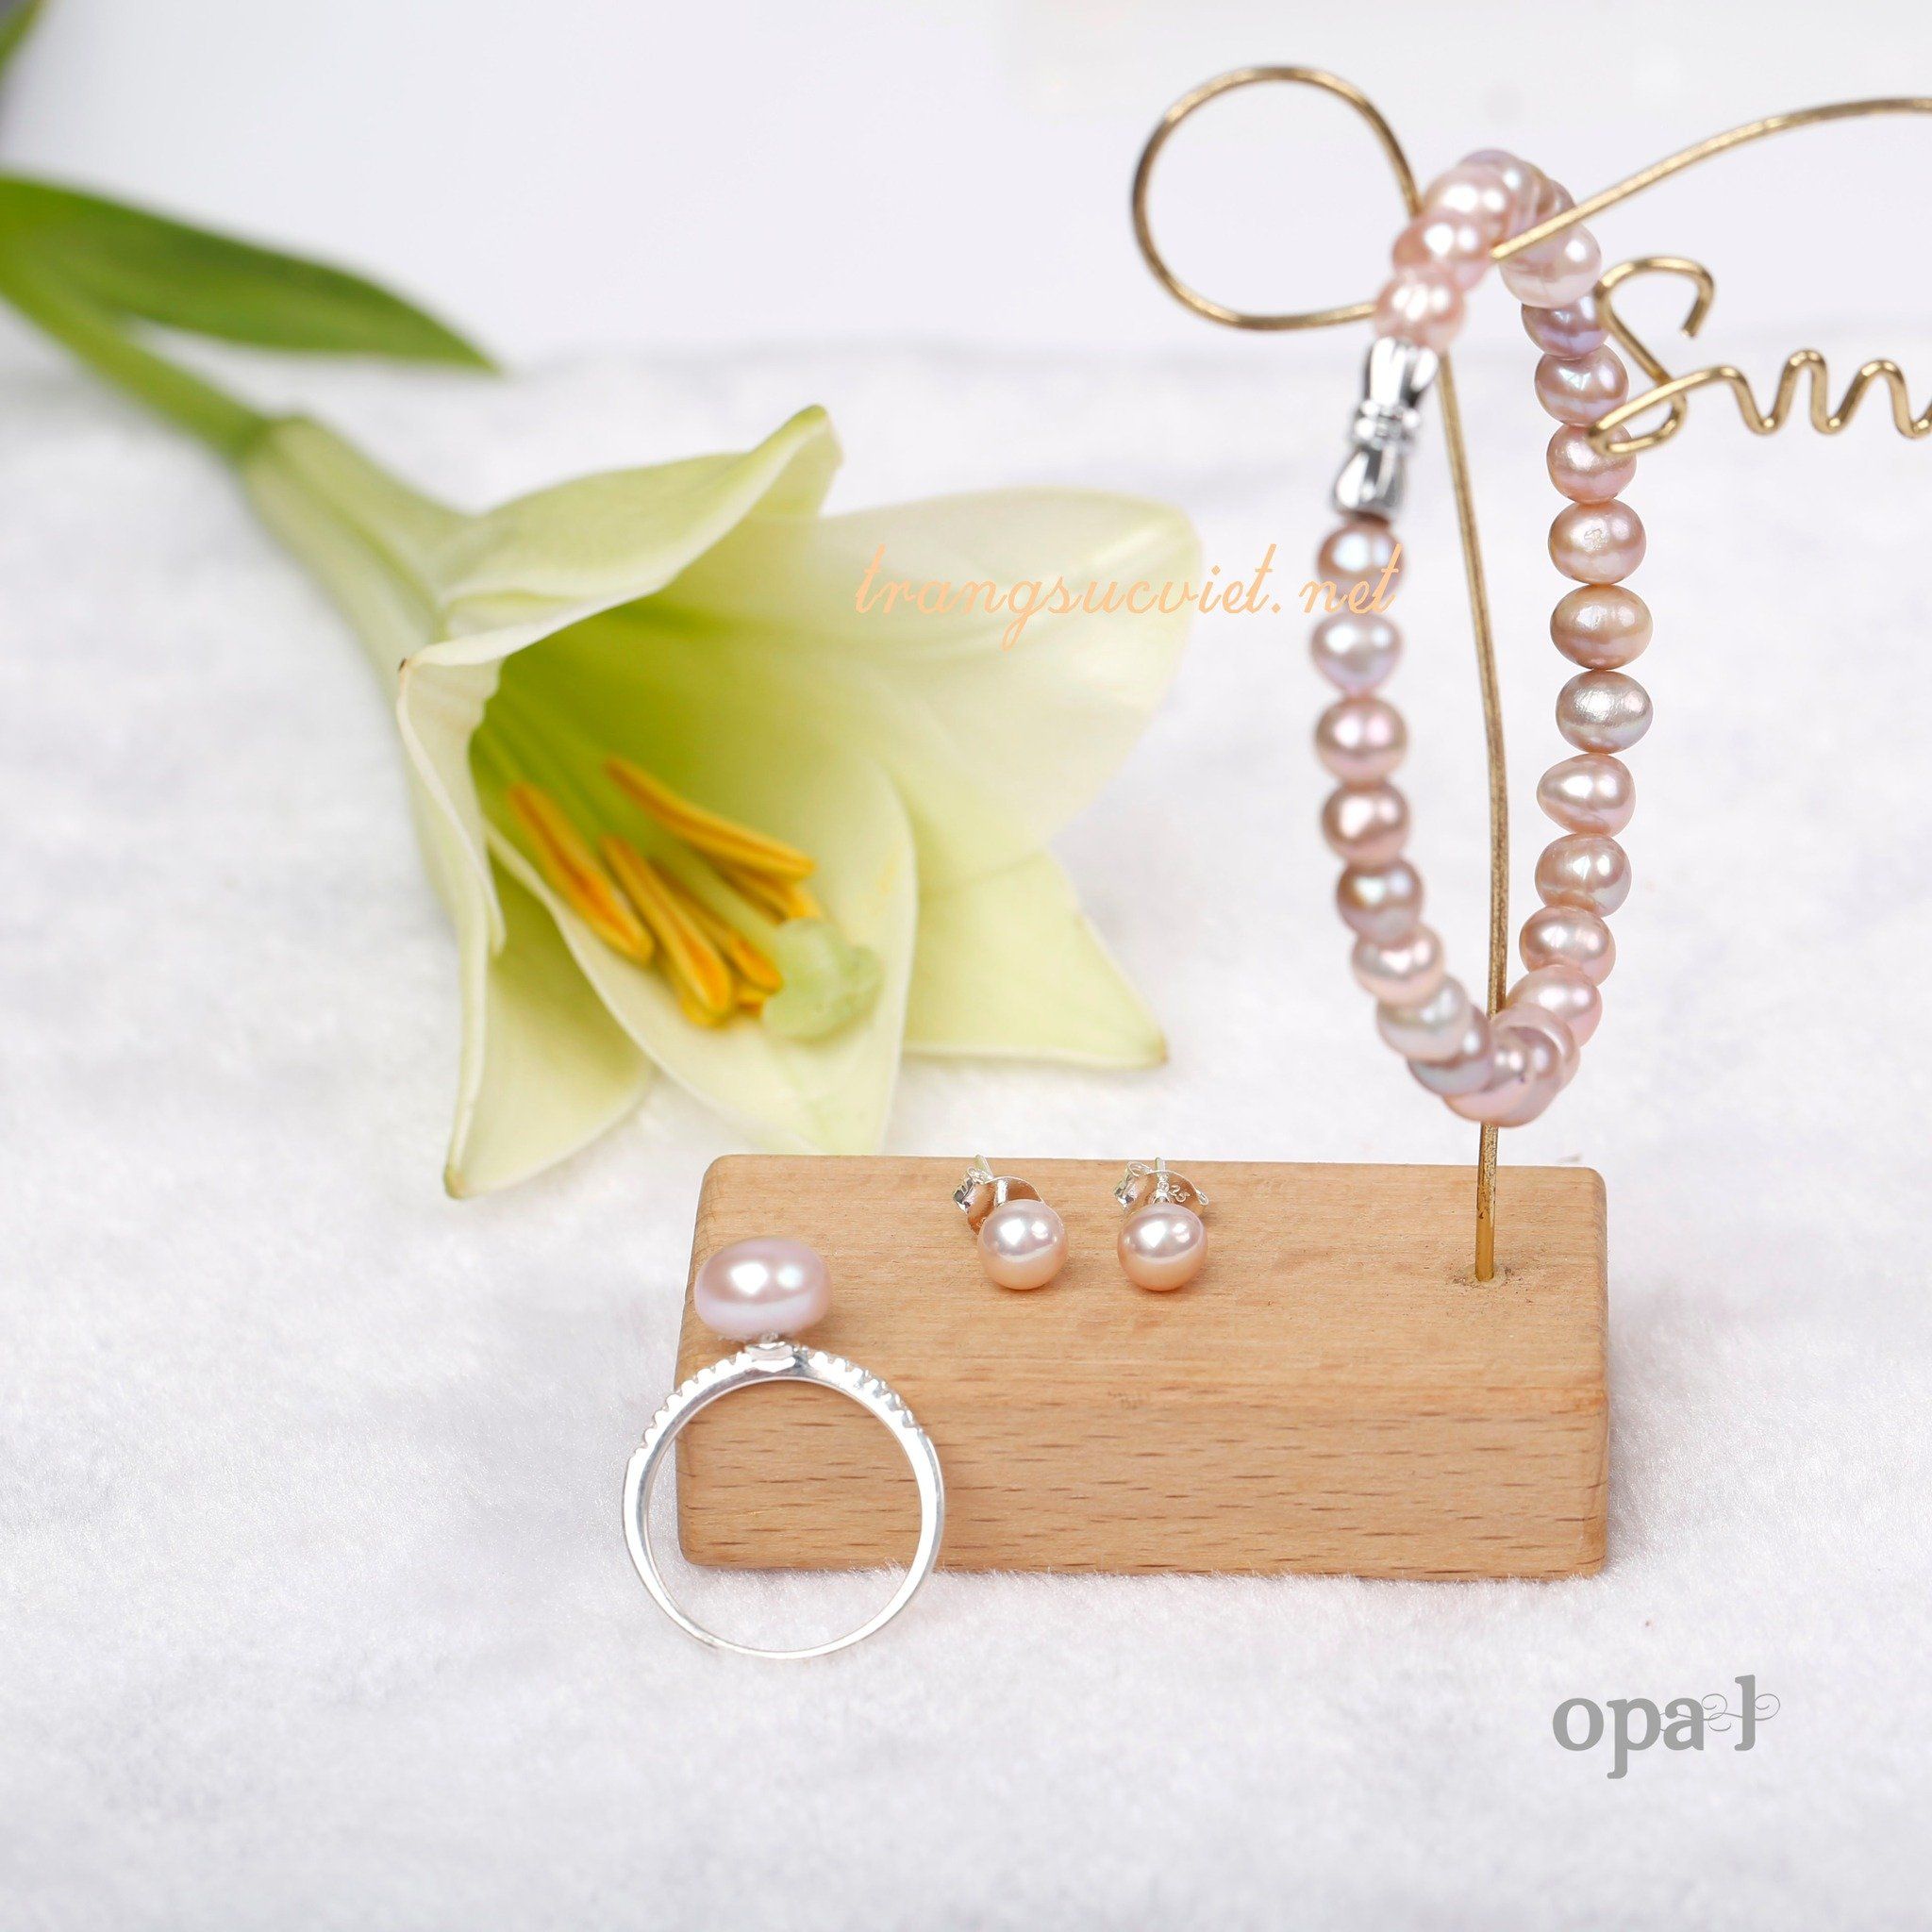  Bộ Vòng cổ , Vòng tay, hoa tai ngọc trai nhí màu tím thời thượng thương hiệu Opal 